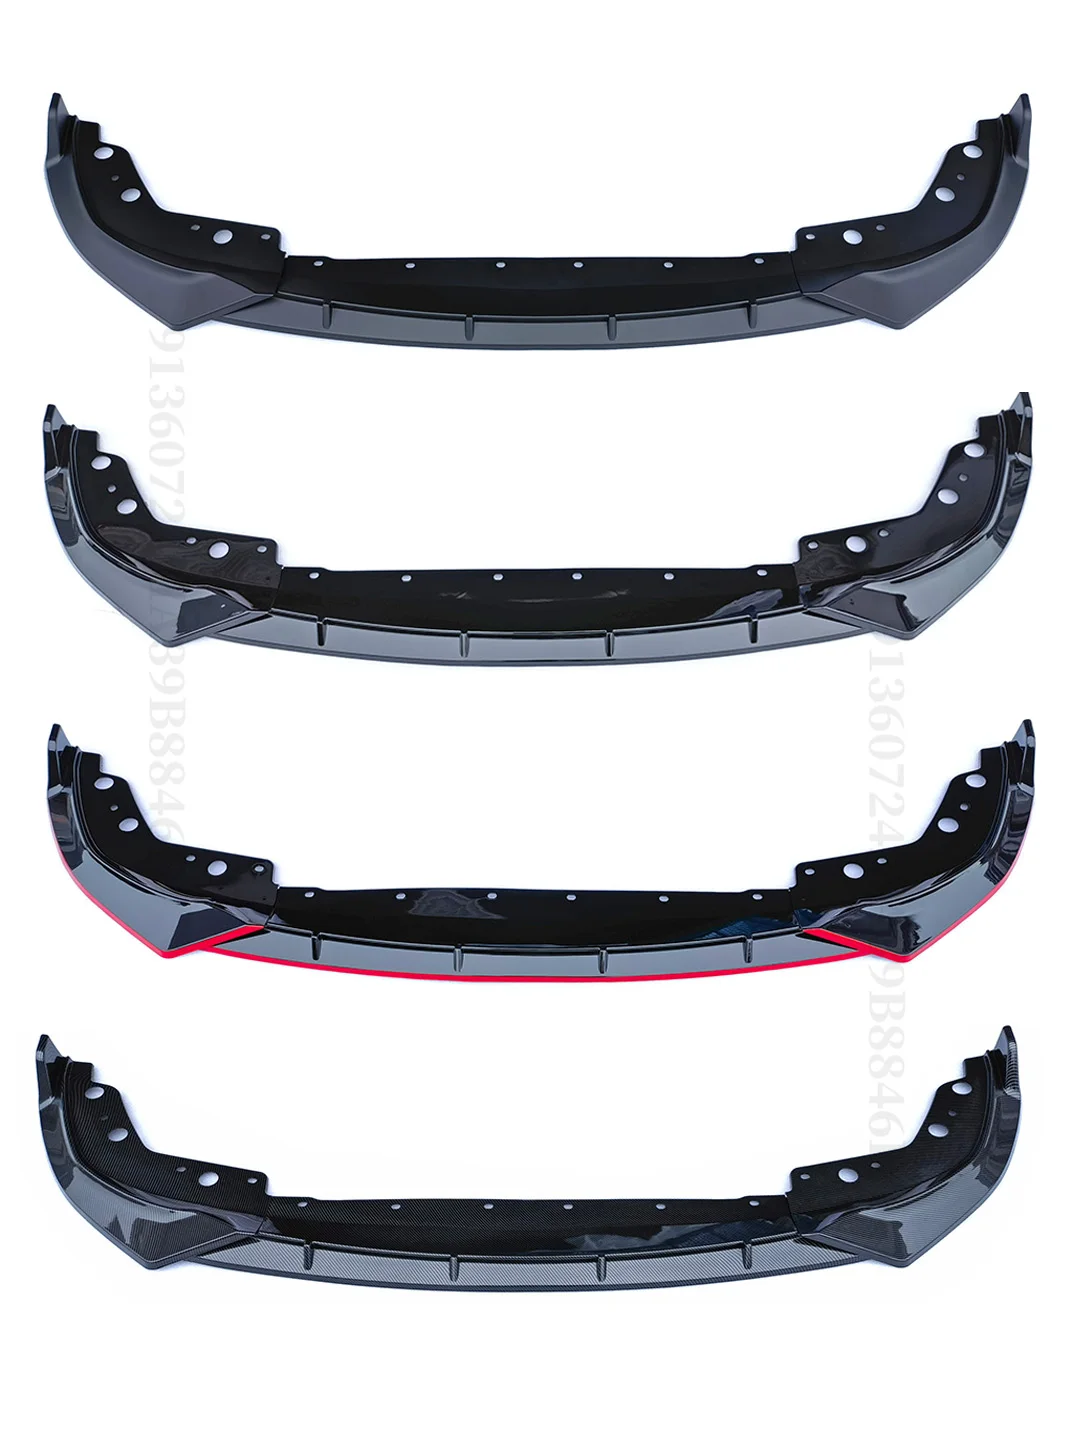 3 stücke Auto Frontgrill Streifen Verkleidung Abdeckung für BMW 3er G20  Xdrive m340i Gitter Streifen Clips Motorsport Zubehör - AliExpress